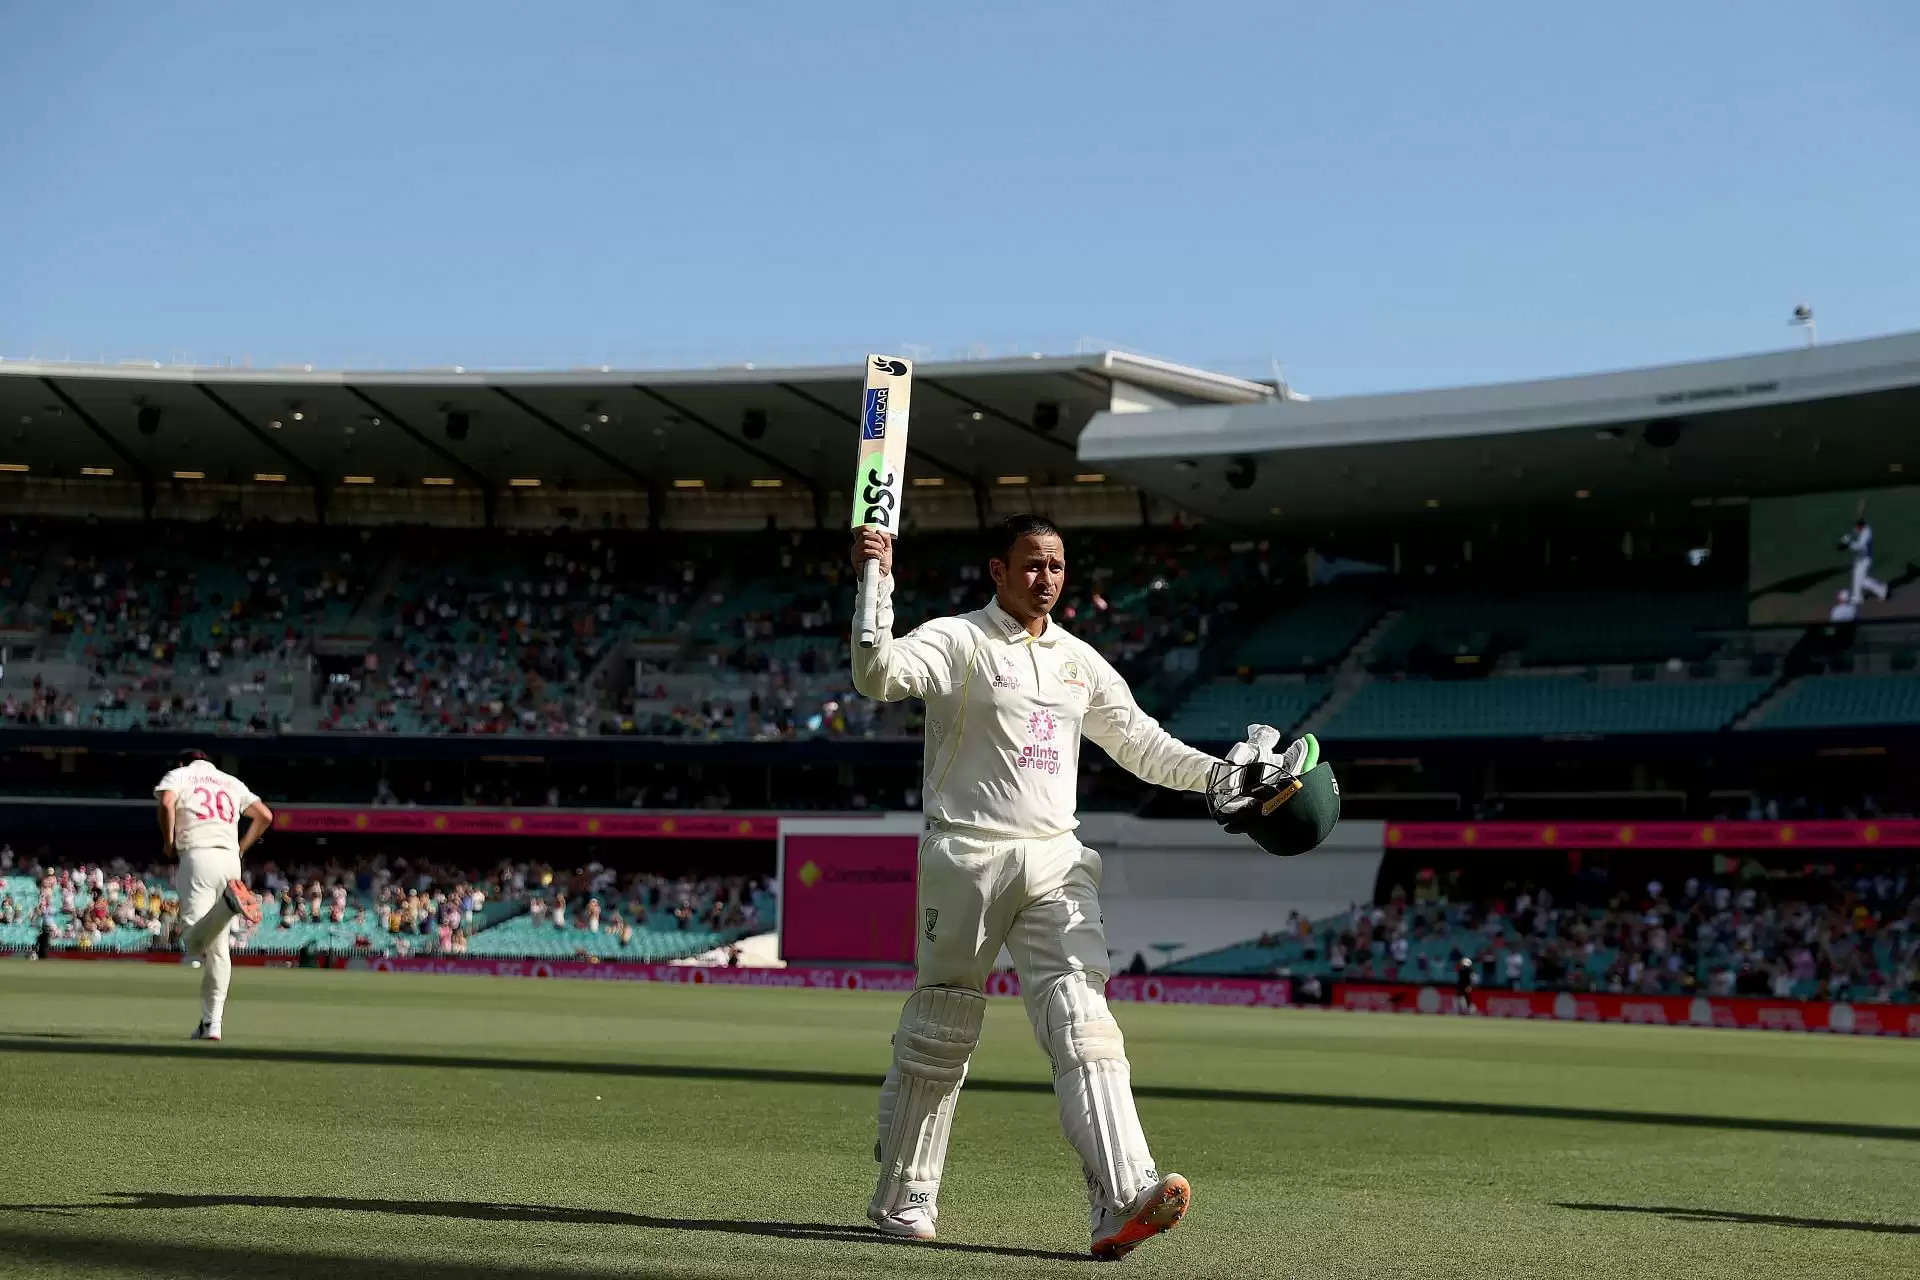 ऑस्ट्रेलिया ने इंग्लैंड के सामने जीत के लिए 388 रनों का टार्गेट रखा, उस्मान ख्वाजा ने दूसरी पारी में भी लगाया शतक